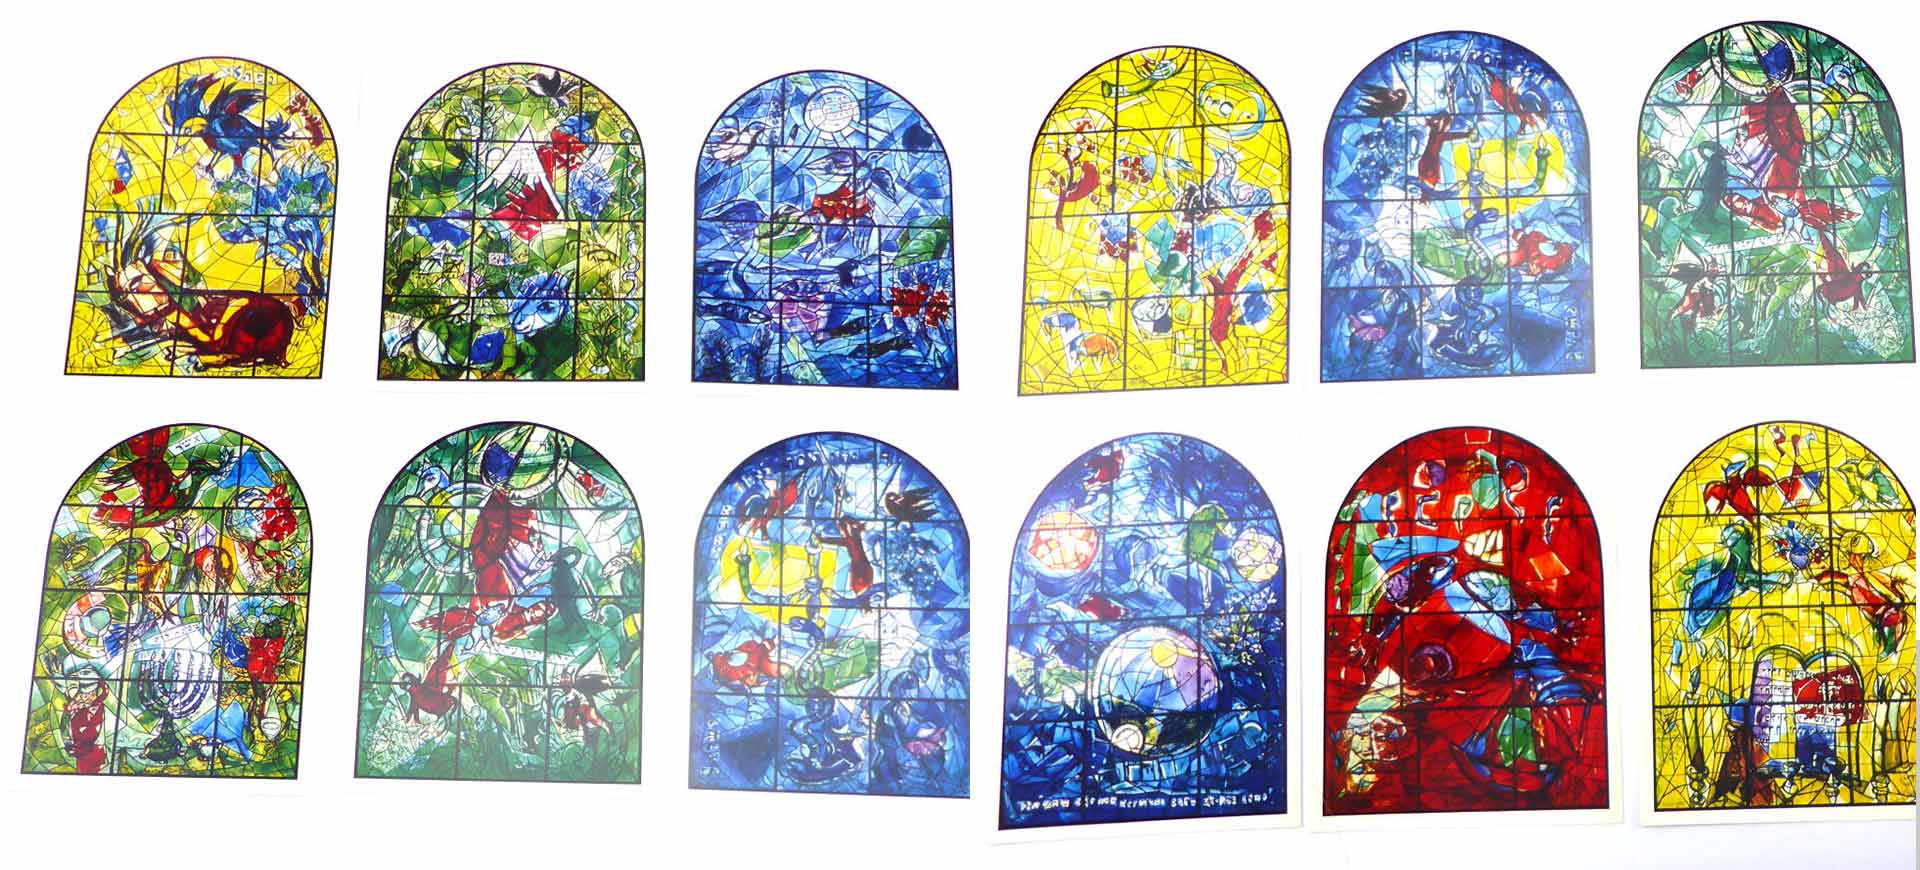 12 חלונות שמייצגים את 12 שבטי ישראל. 'חלונות שאגאל', יוצר: מארק שאגאל